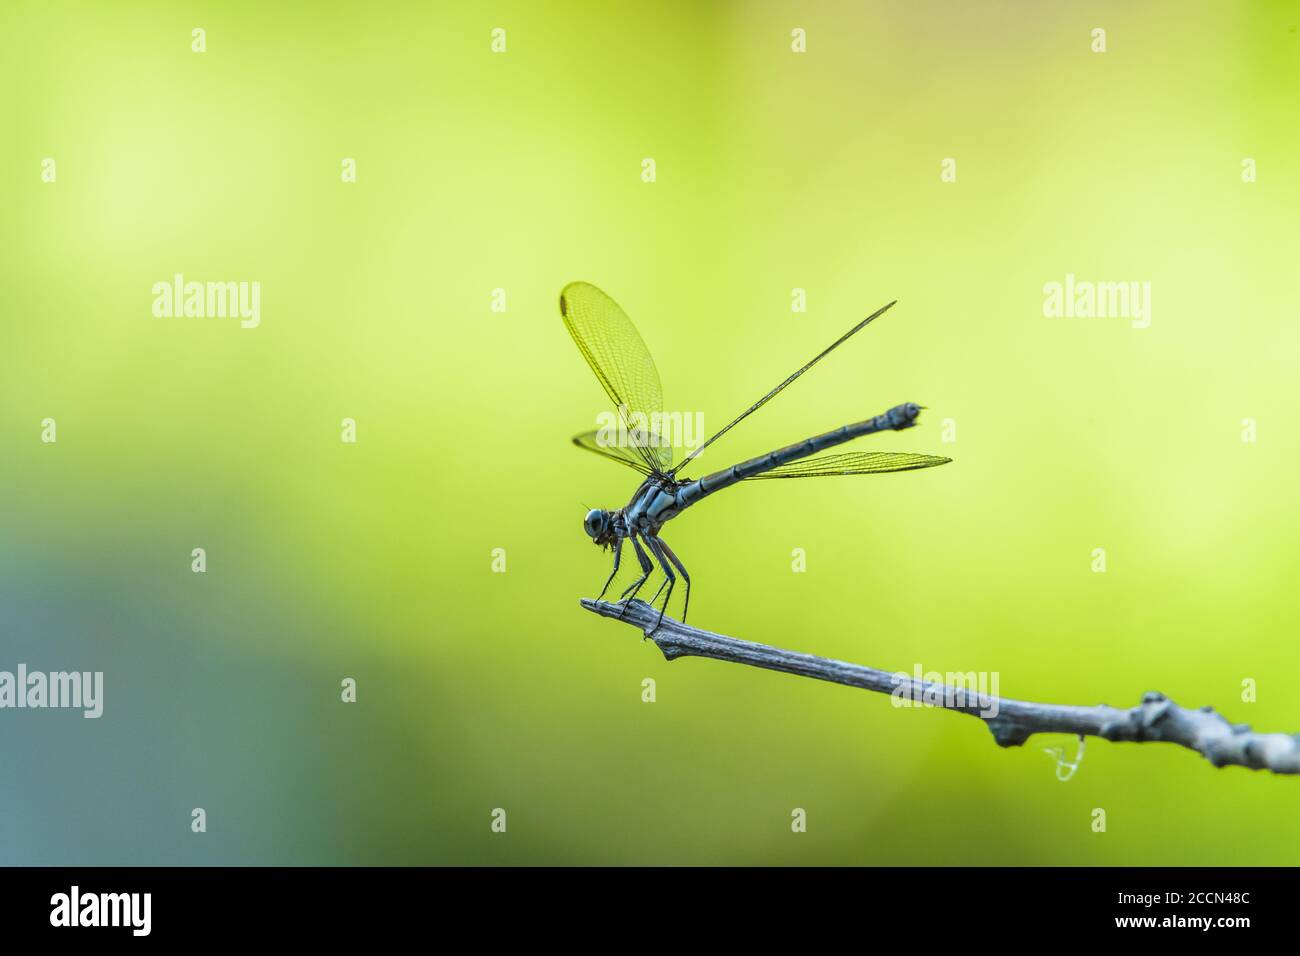 Un gros plan, à côté d'une libellule bleue, entre les forays de chasse, reposant sur une branche avec un fond vert hors foyer à Cairns, en Australie. Banque D'Images